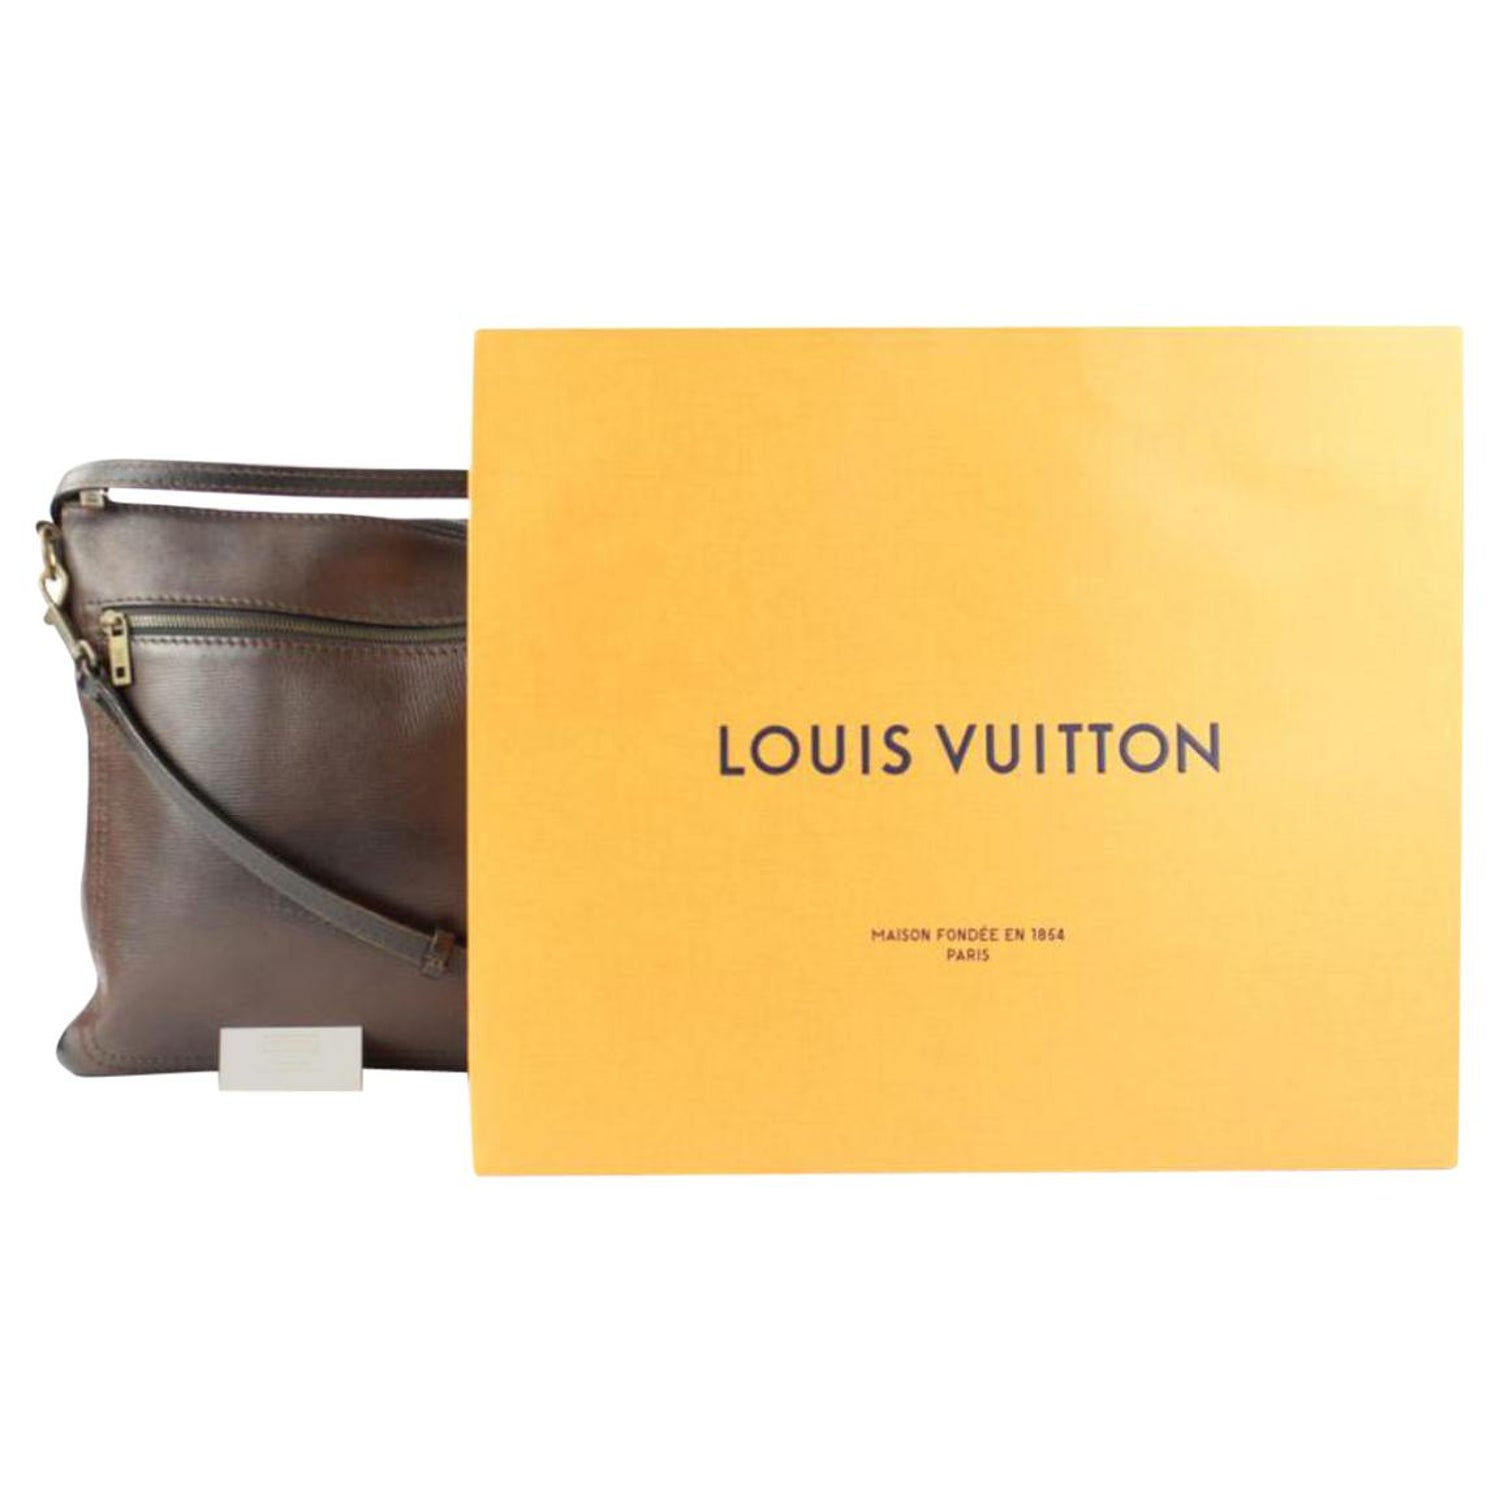 Shop Louis Vuitton Sac Plat Messenger (M81295) by lifeisfun